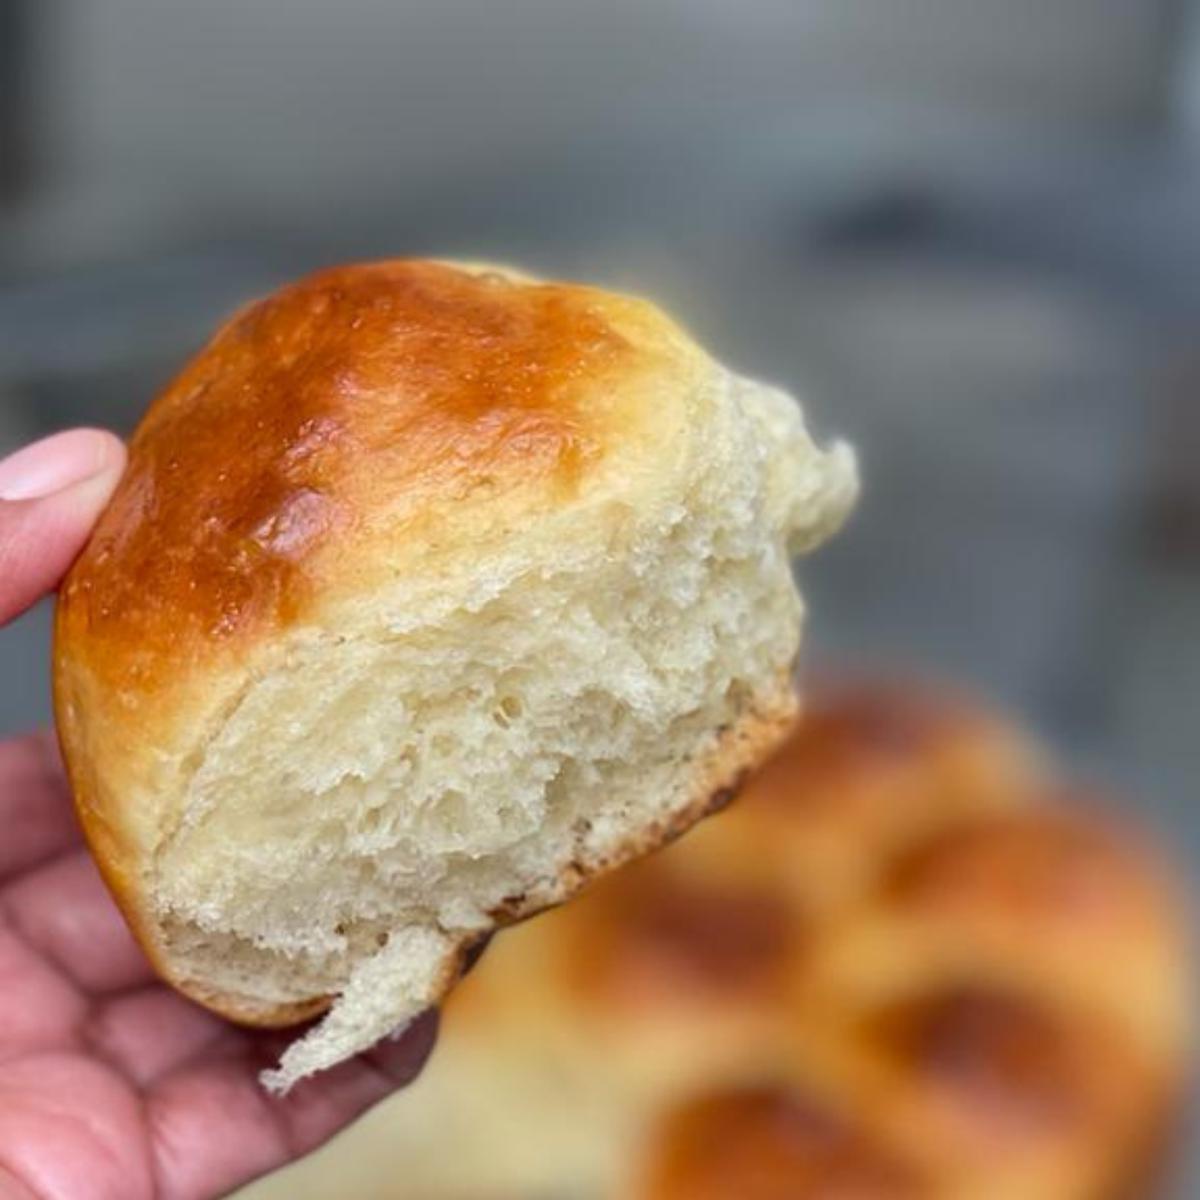 Pan de molde casero: la receta más fácil y rápida